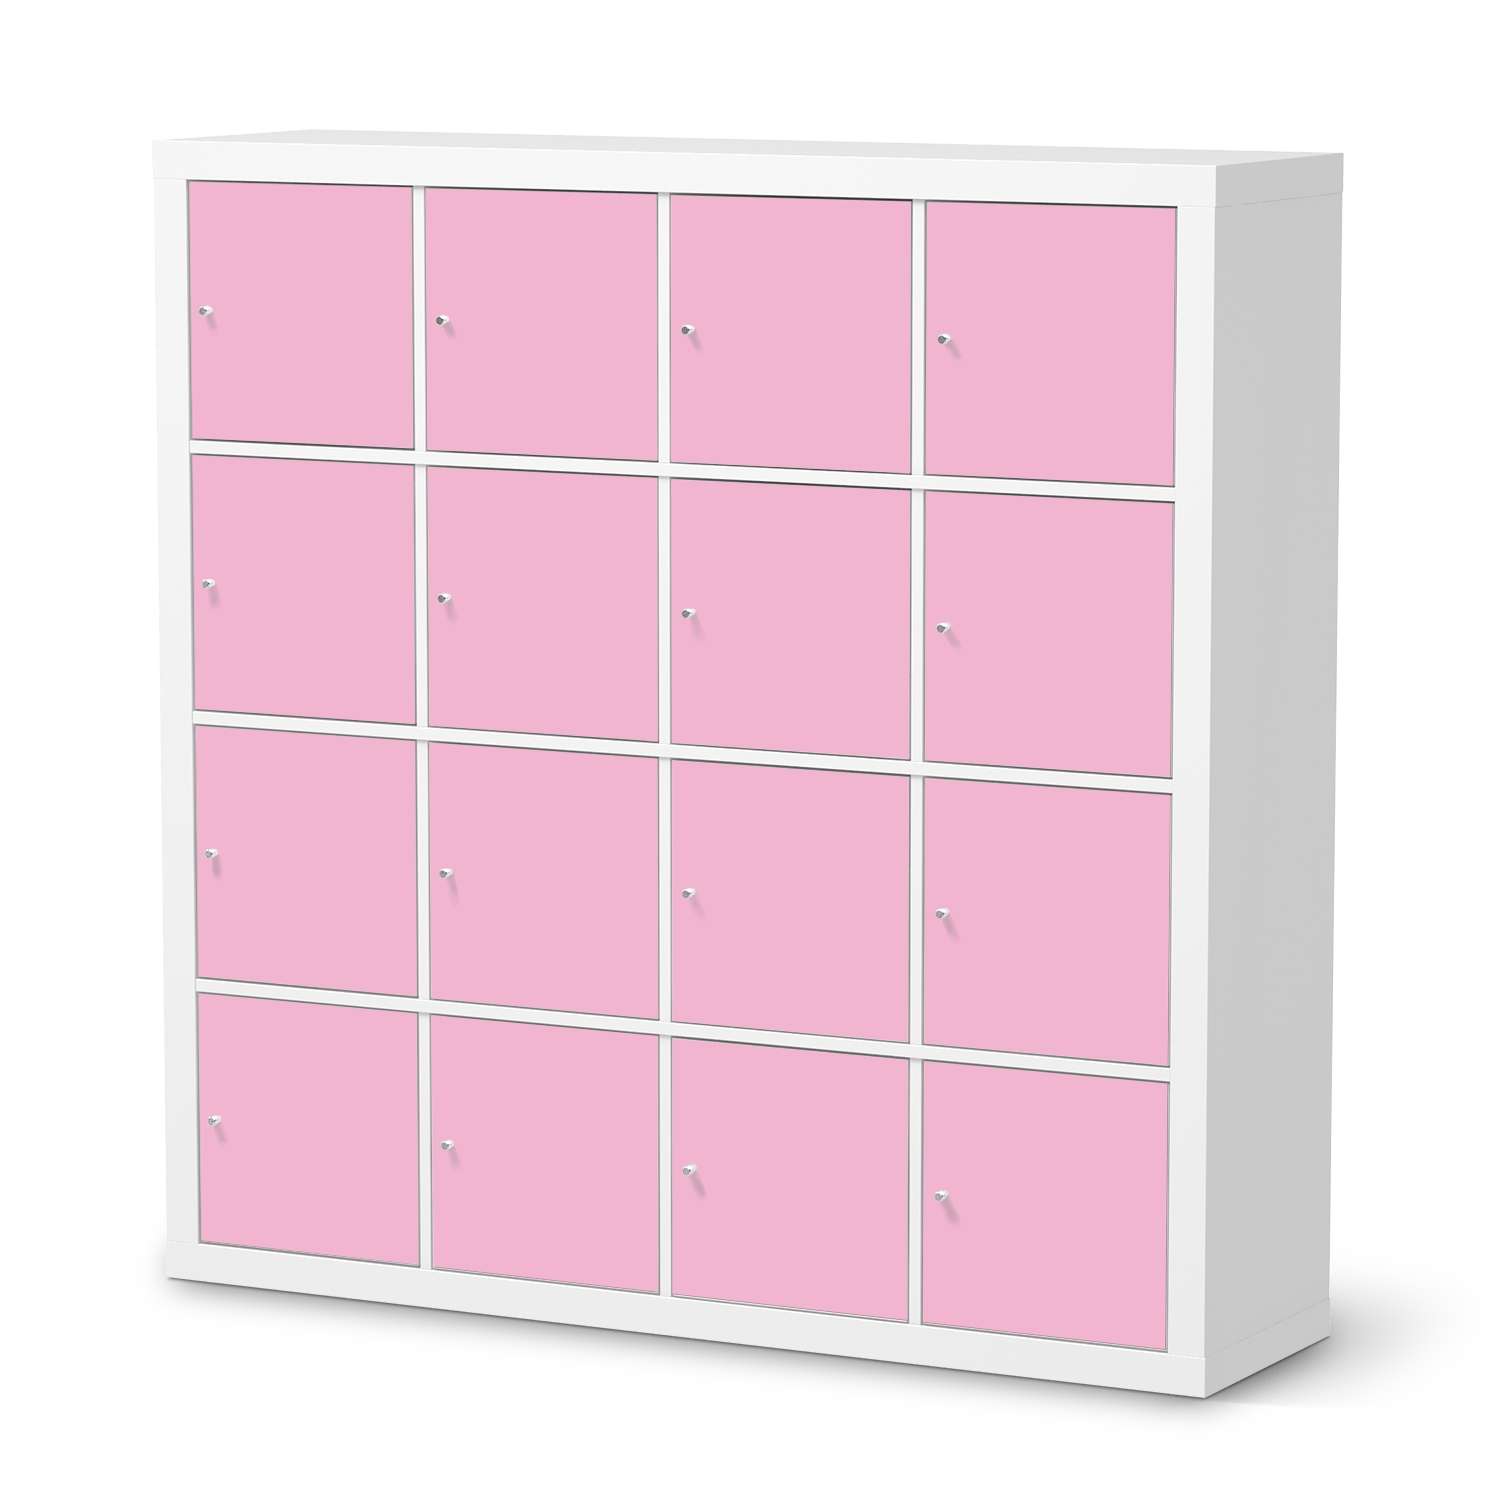 Selbstklebende Folie IKEA Expedit Regal 16 T?ren - Design: Pink Light von creatisto